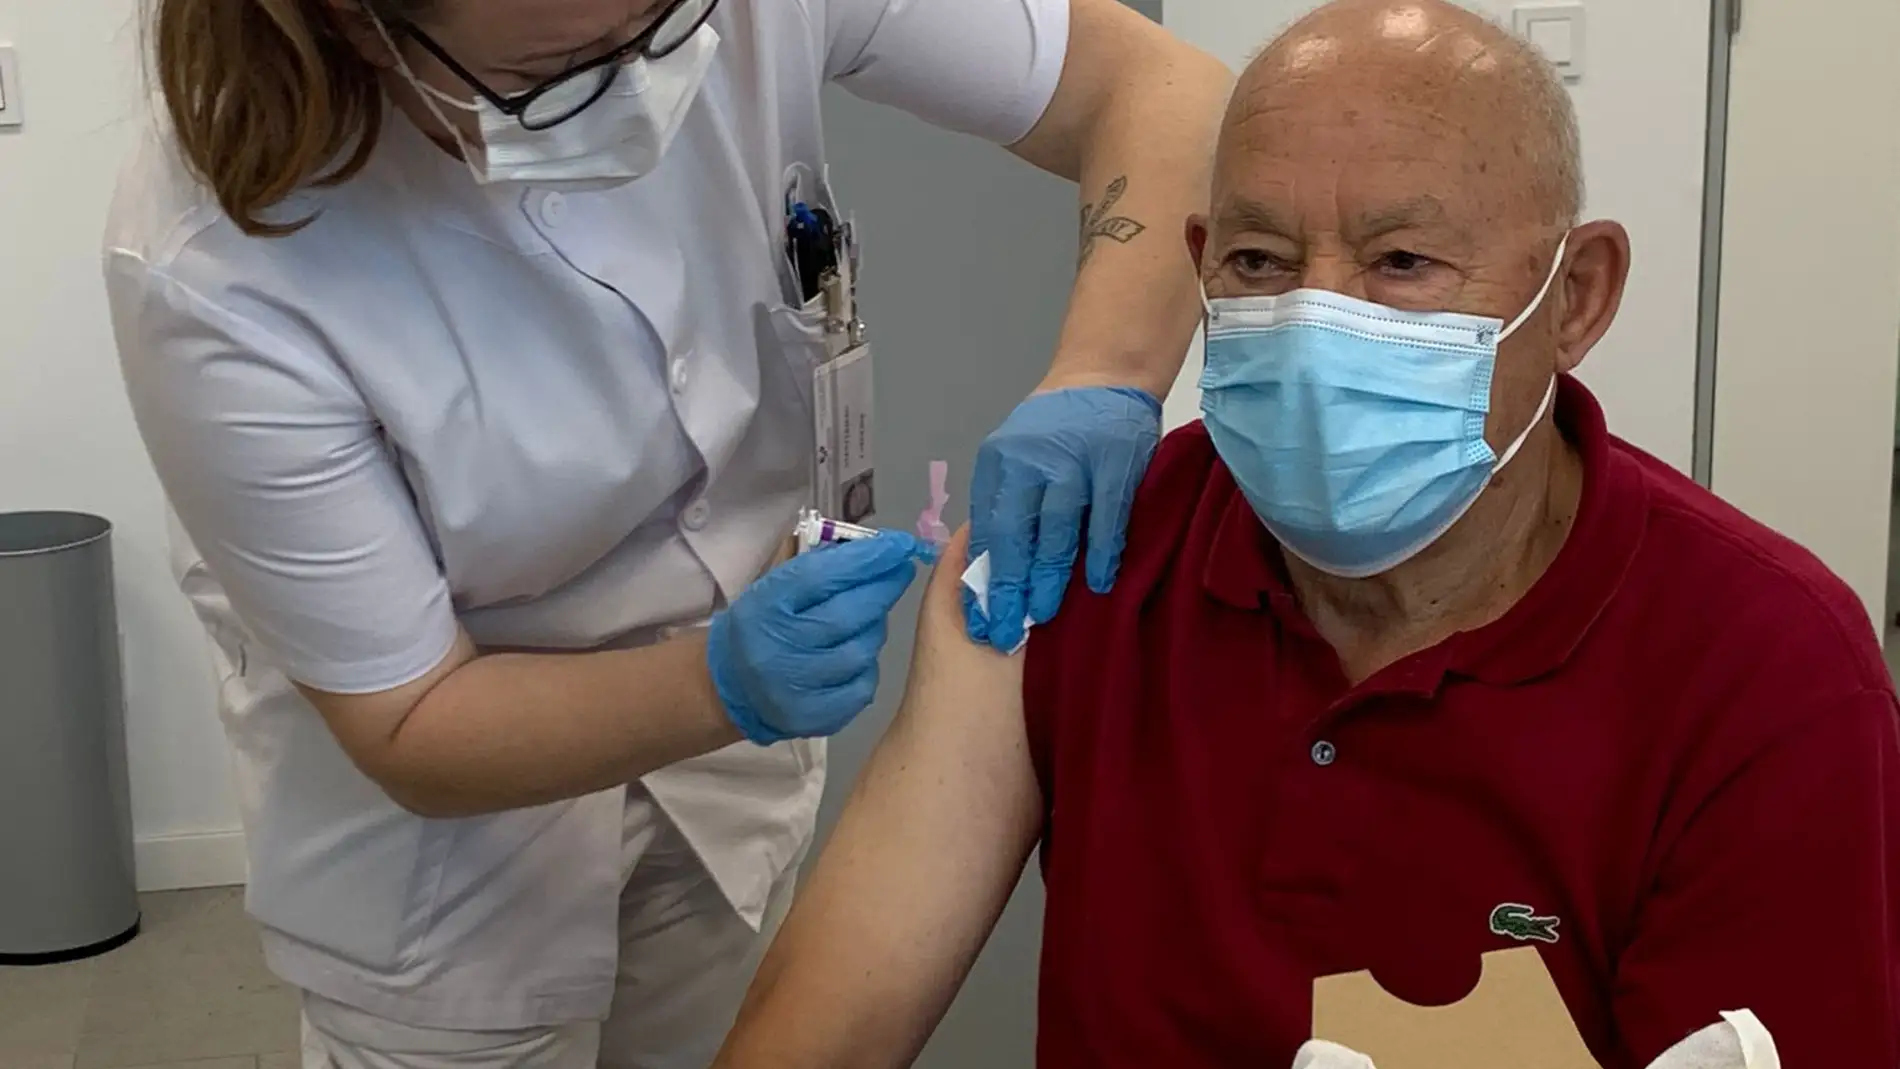 Comienza la campaña de vacunación de la gripe en Euskadi